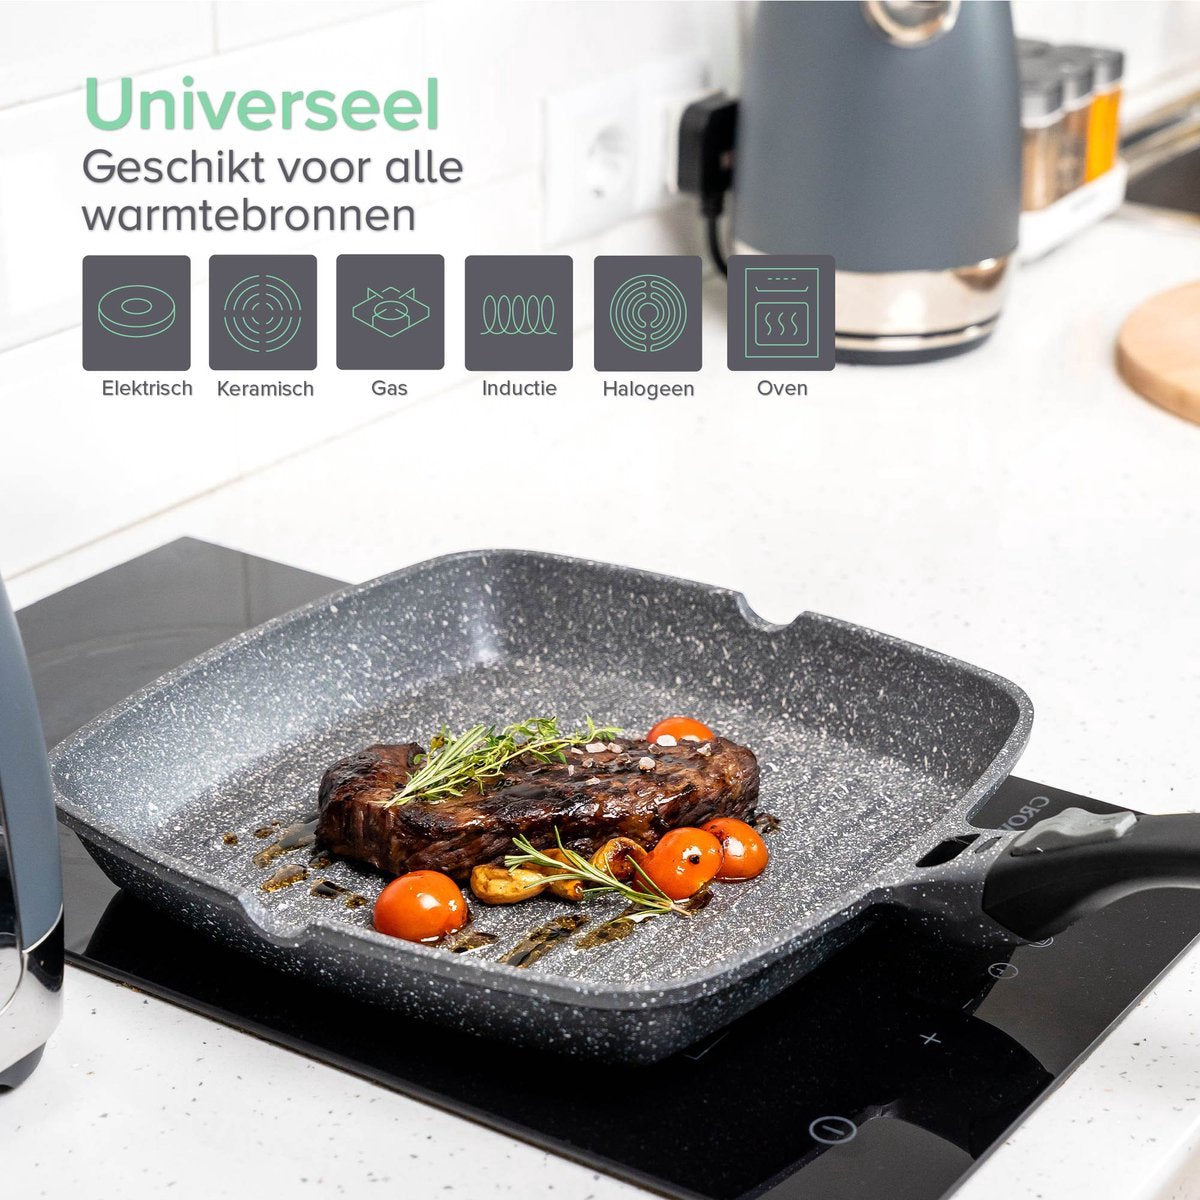 Coninx Grillpan inductie 28cm - Steakpan vleespan - Grill pan met Afneembare Handgreep - PFAS-vrij - Geschikt voor alle warmtebronnen